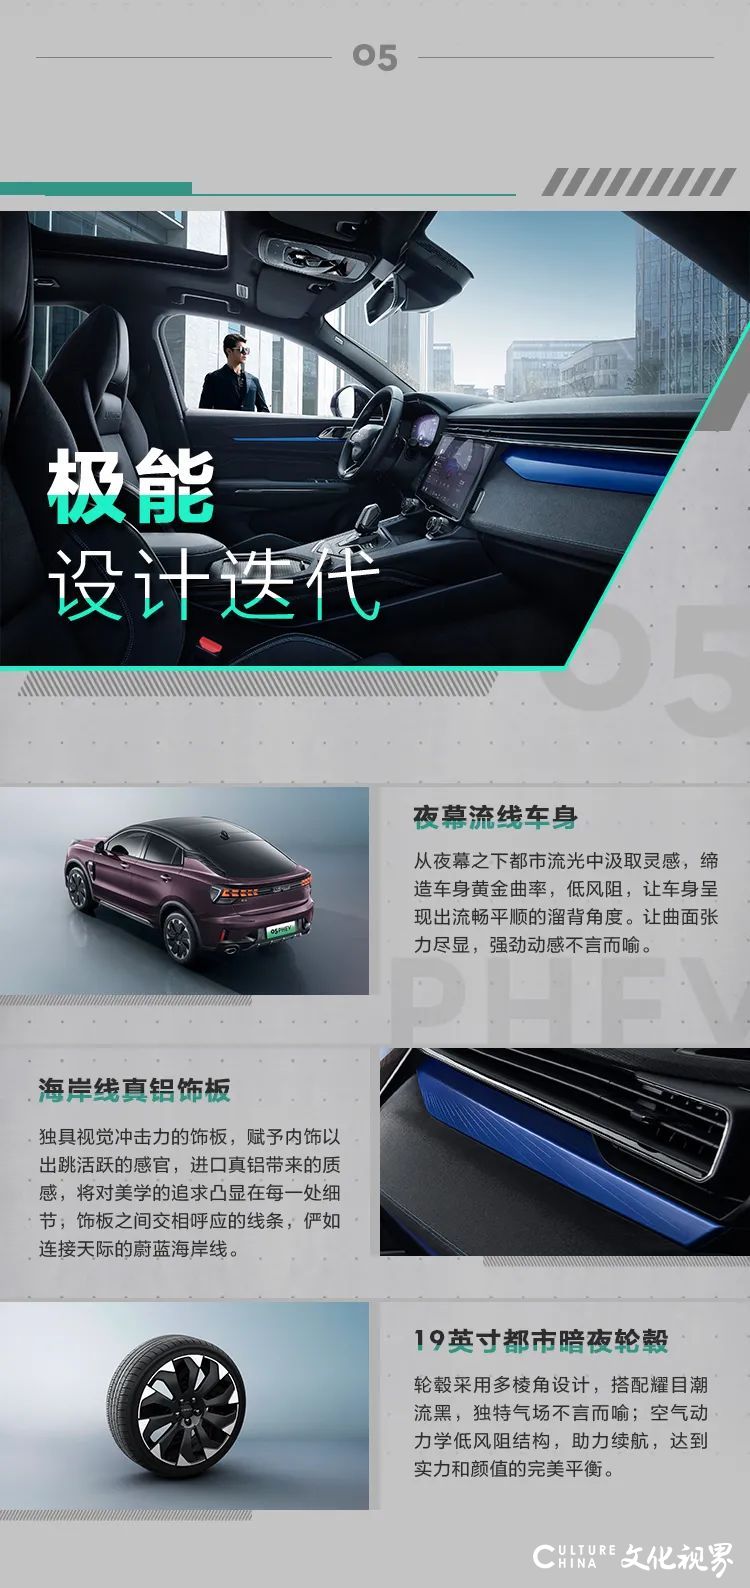 领克05 PHEV极能运动SUV正式上市，官方指导价22.77万元